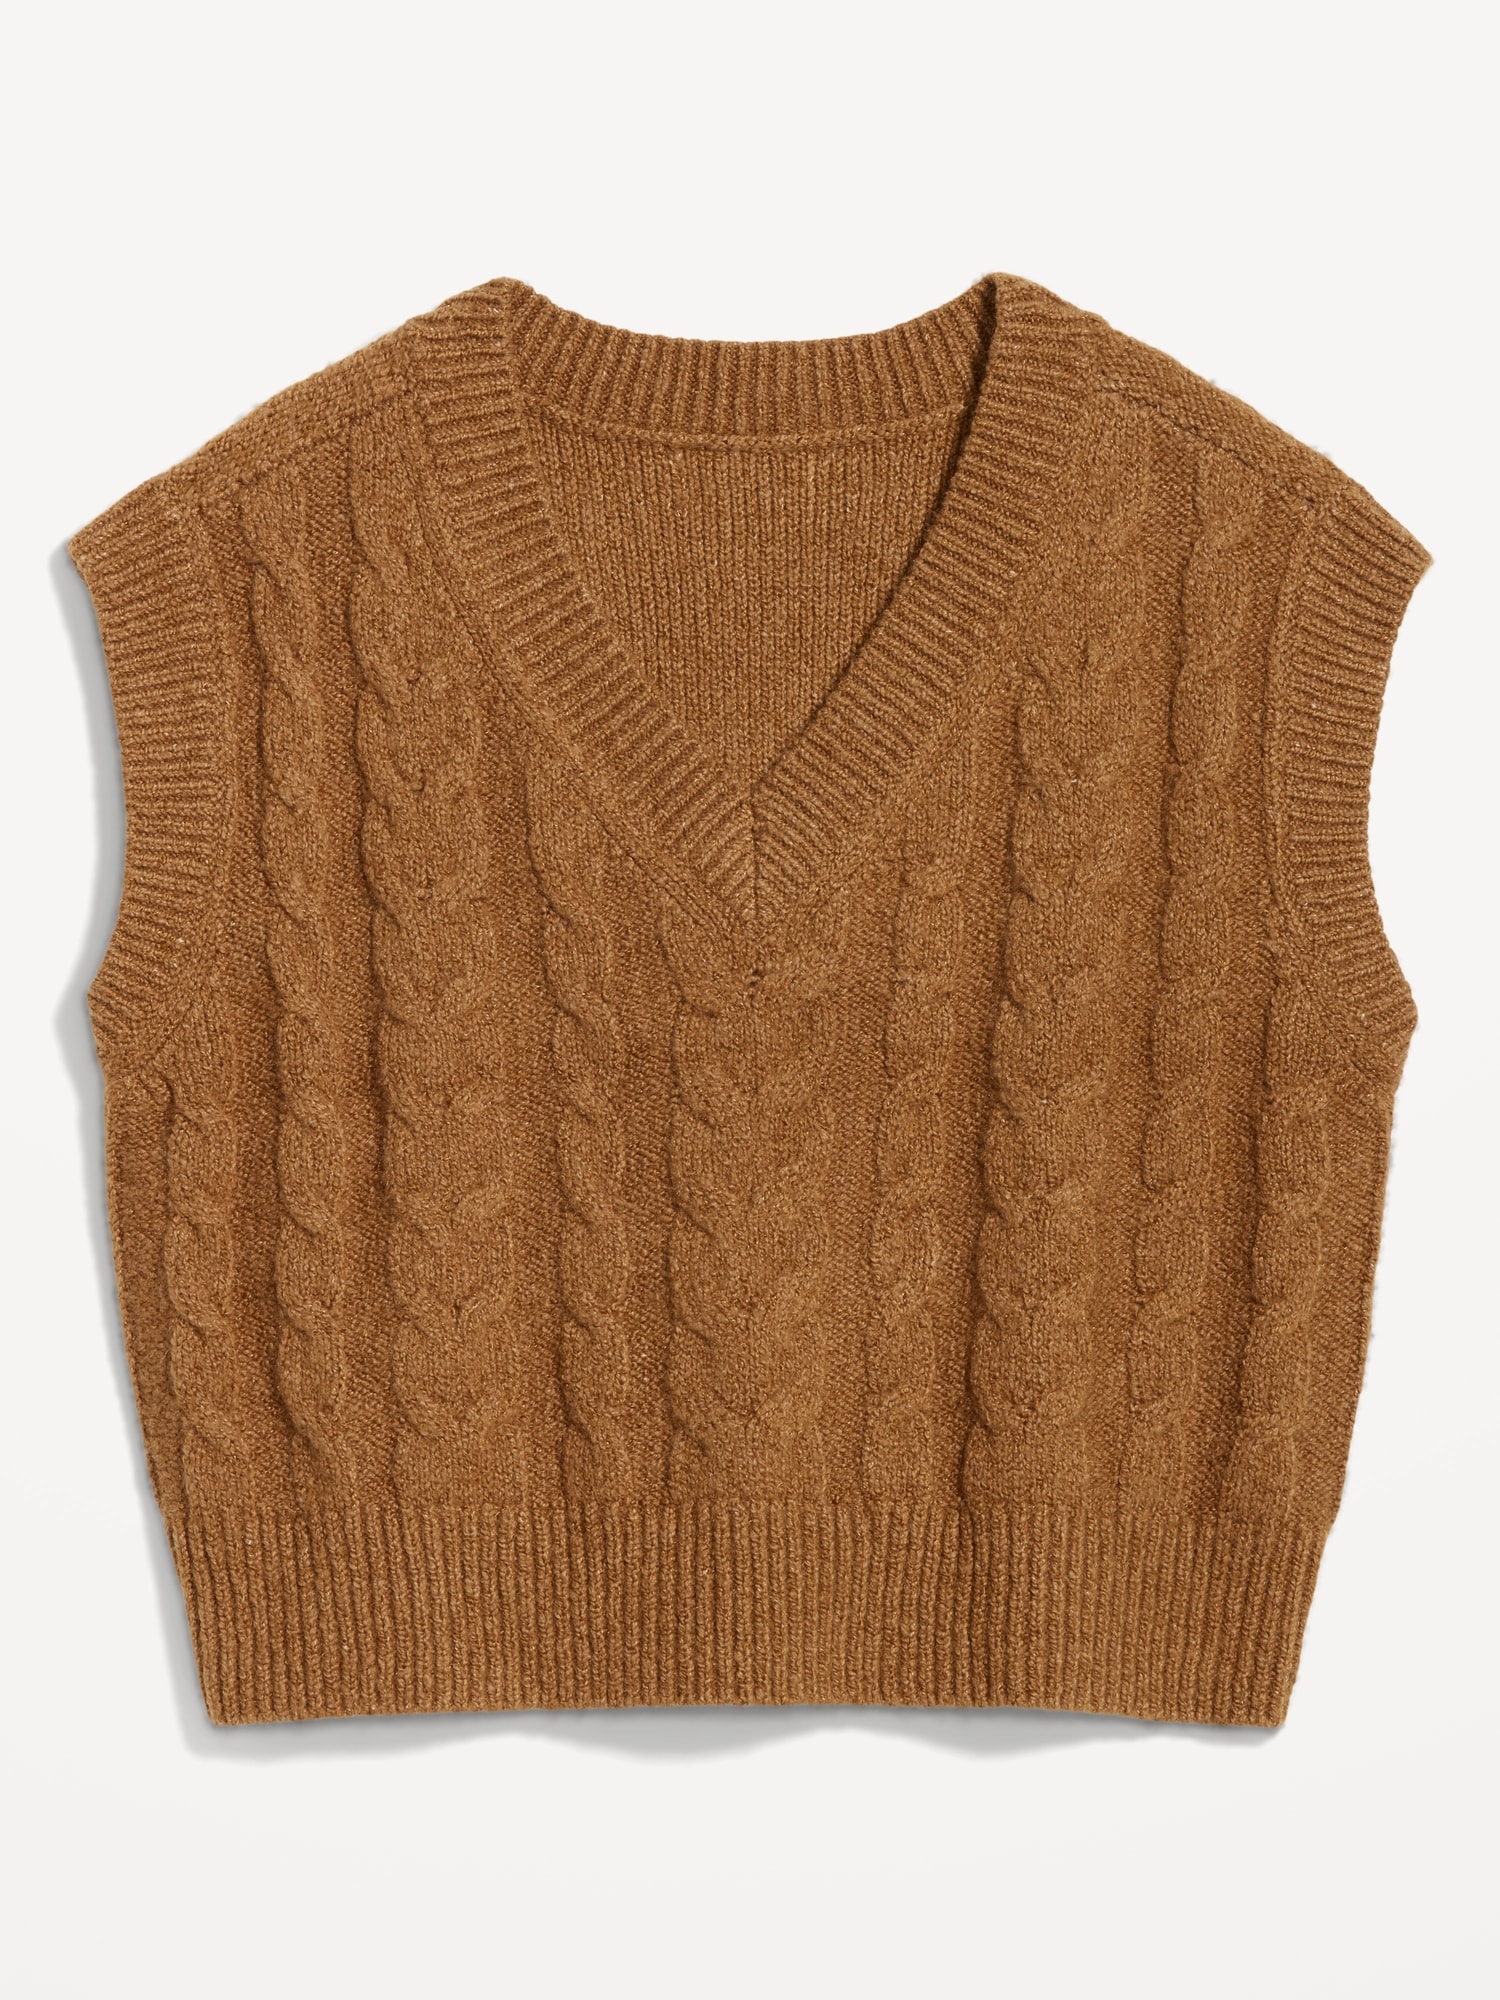 Plush knit V-neck sweater vest